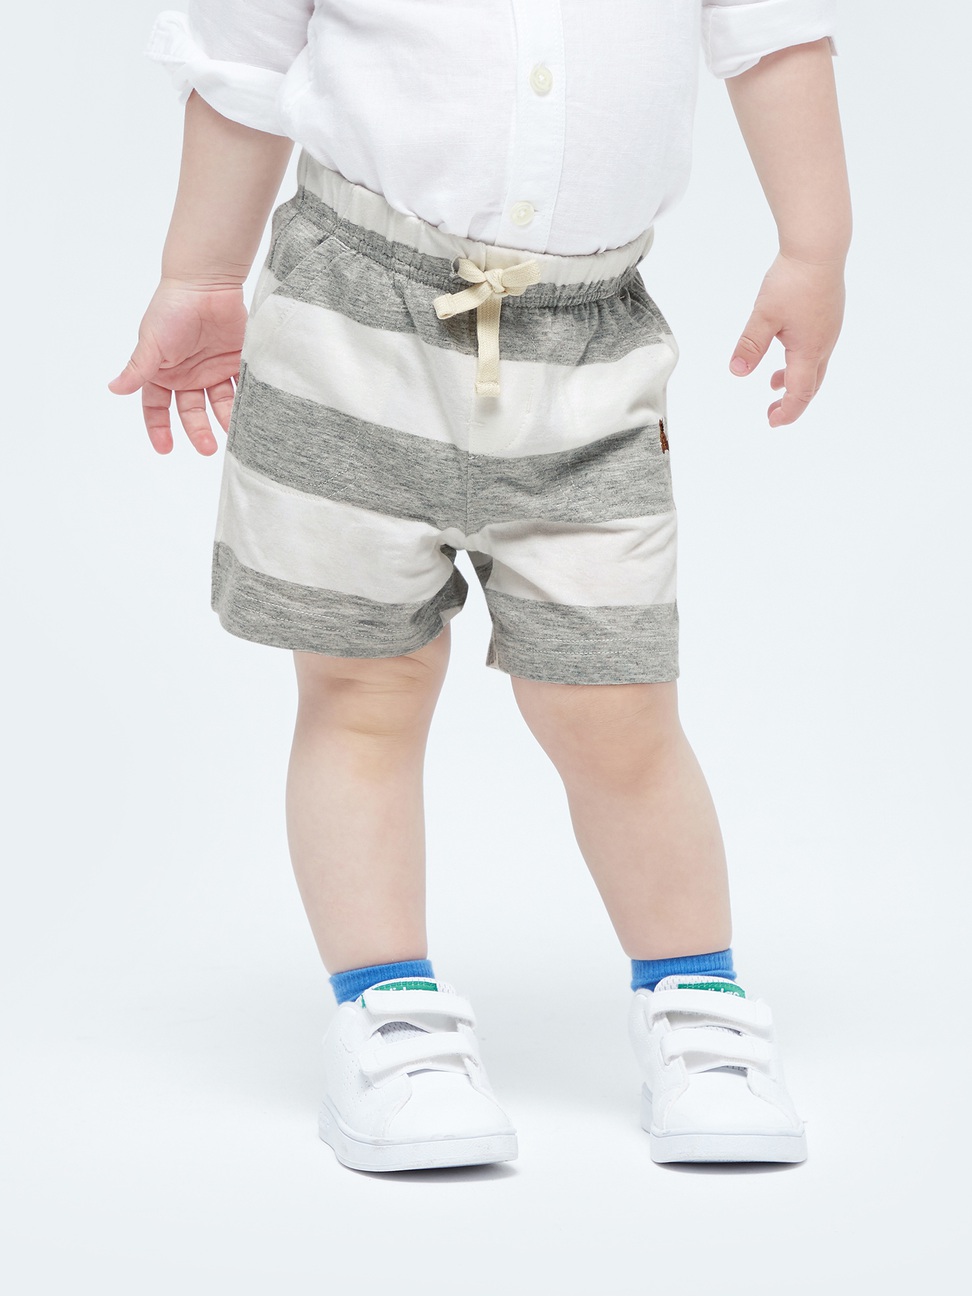 嬰兒裝|清爽條紋透氣短褲 布萊納系列-灰色條紋